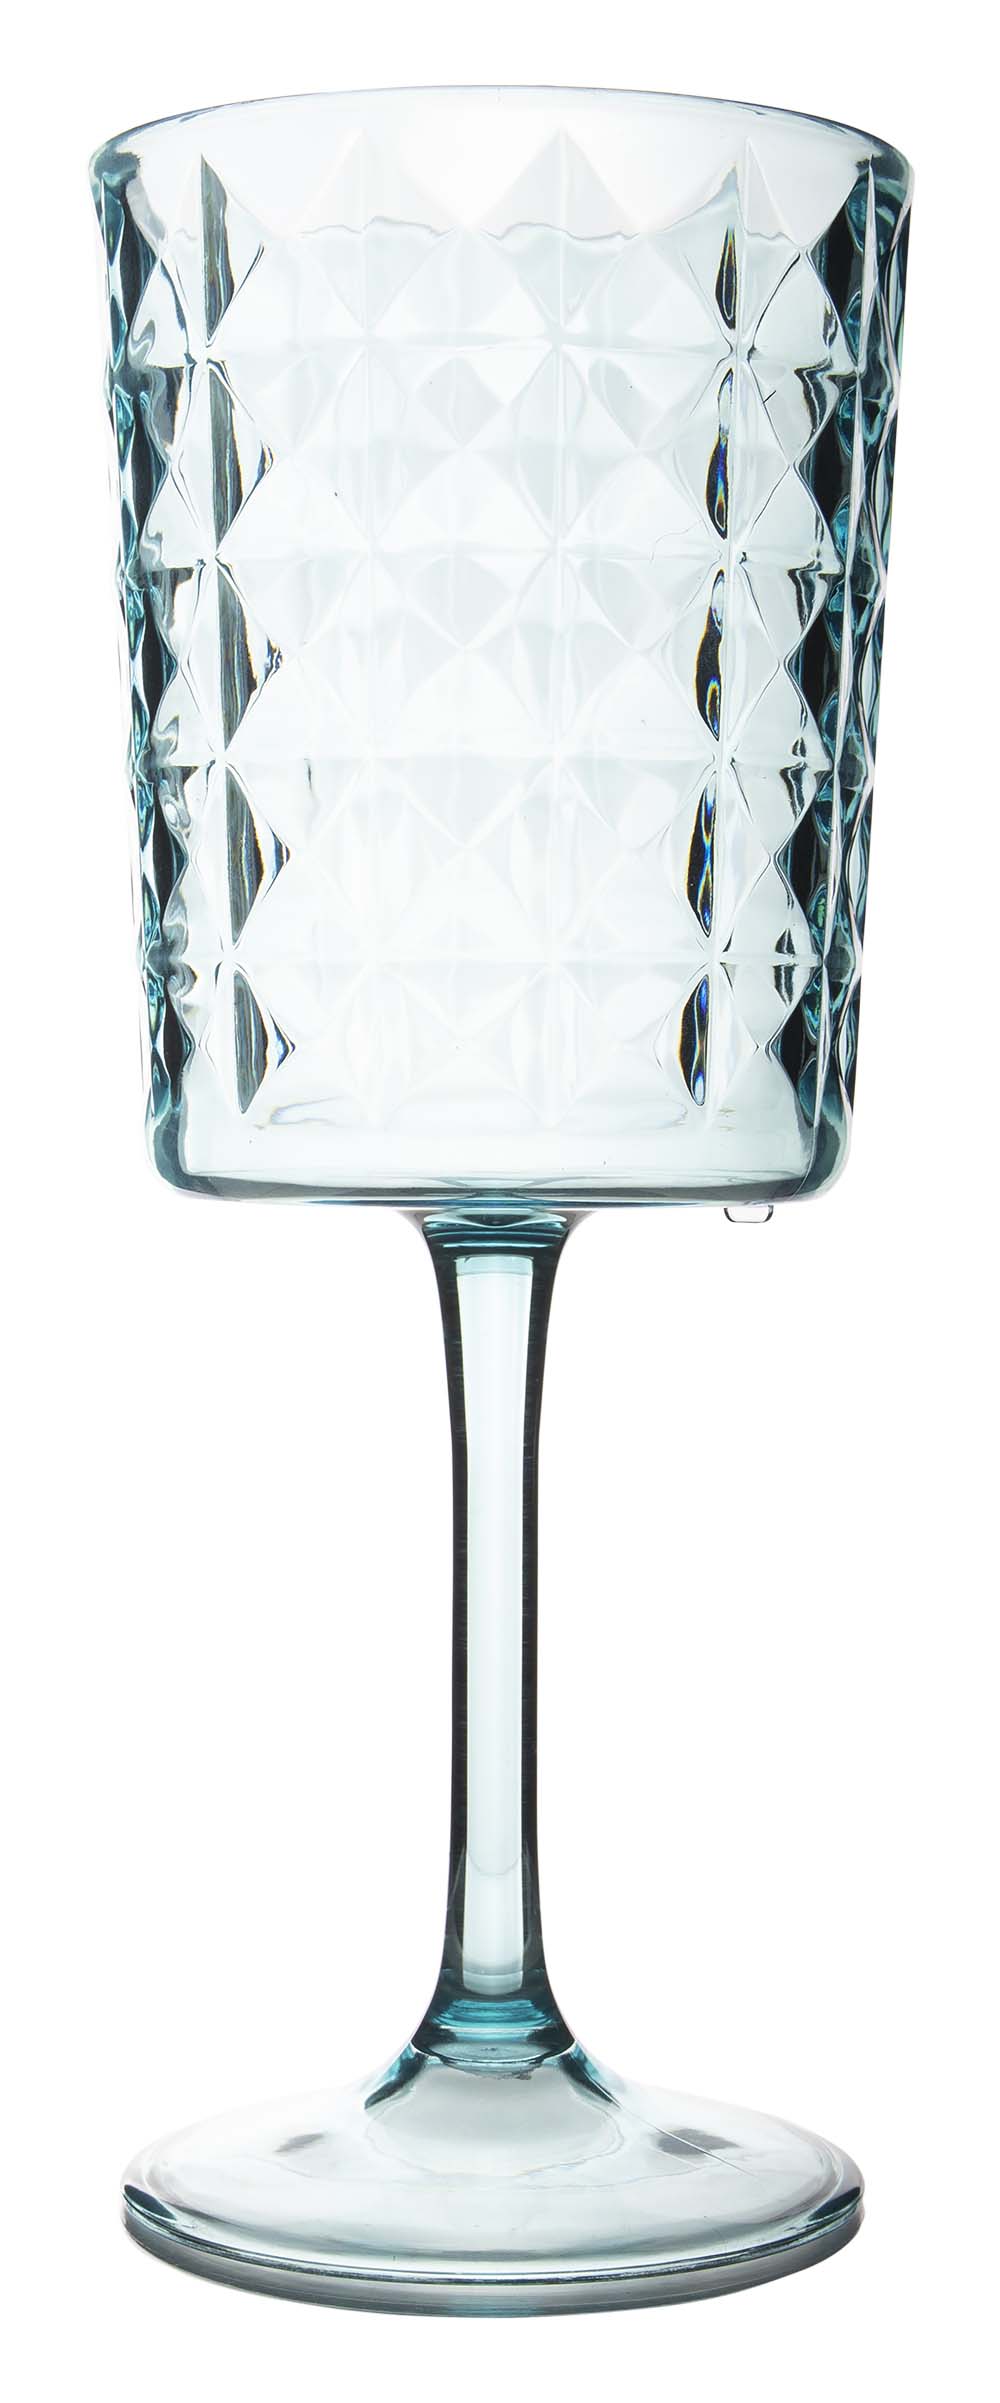 6967953 Een stijlvol turquois kleurig wijnglas uit de Stone line collectie. Vrijwel onbreekbaar door hoogwaardig SAN materiaal. Zeer gemakkelijk te reinigen en langdurig te gebruiken, wat het glas erg duurzaam maakt. Daarnaast is het wijnglas erg lichtgewicht en krasbestendig. Inhoud: 400 ml.